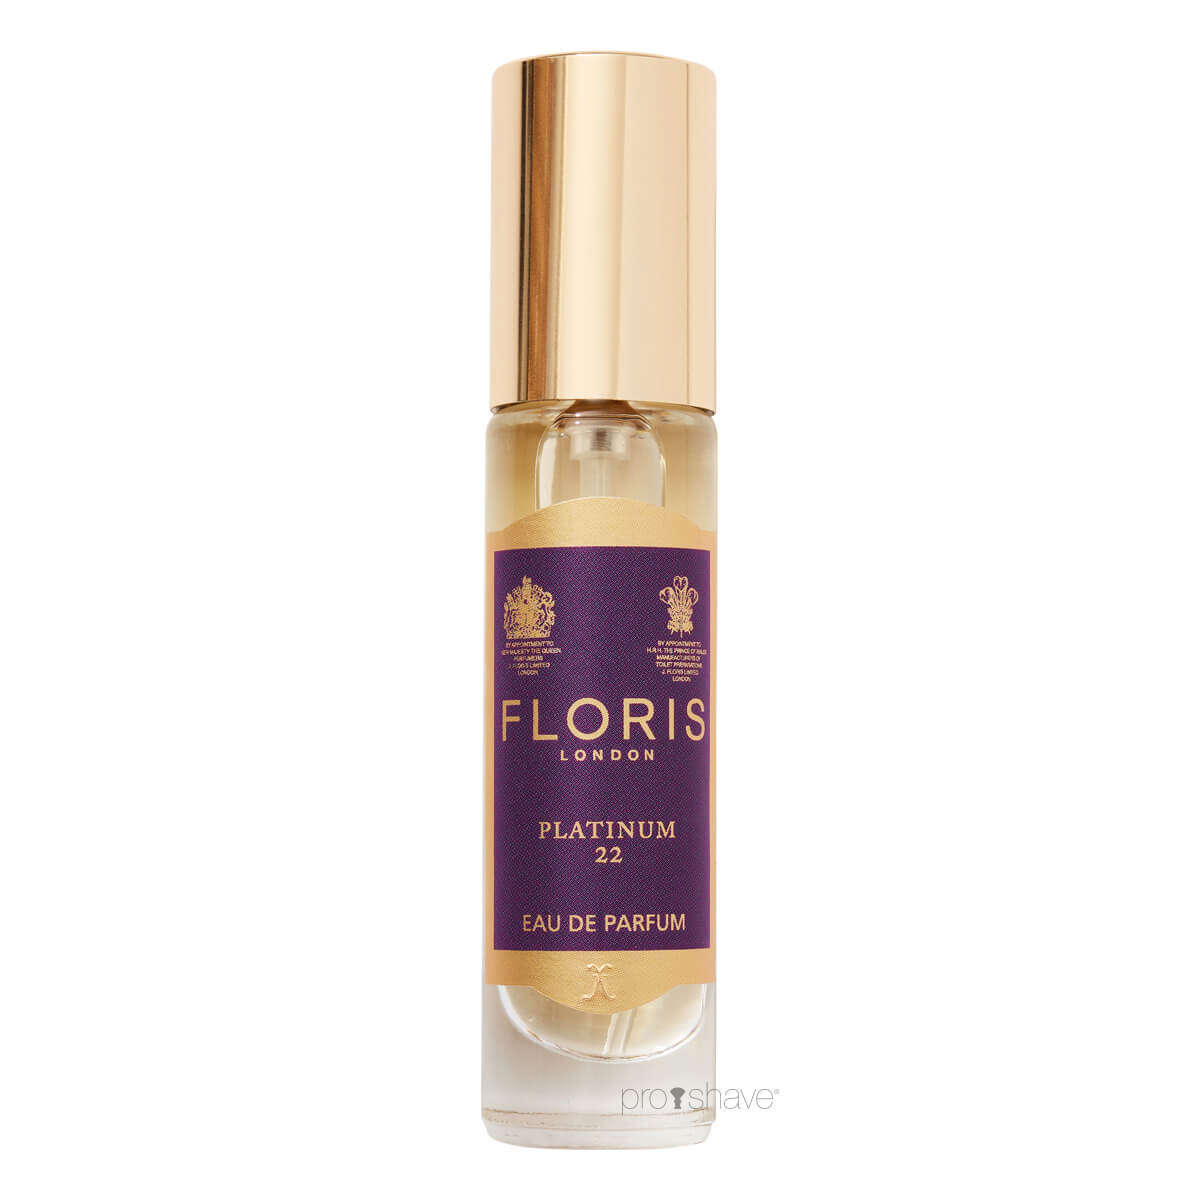 Se Floris Platinum22, Eau de Parfum, 10 ml. hos Proshave